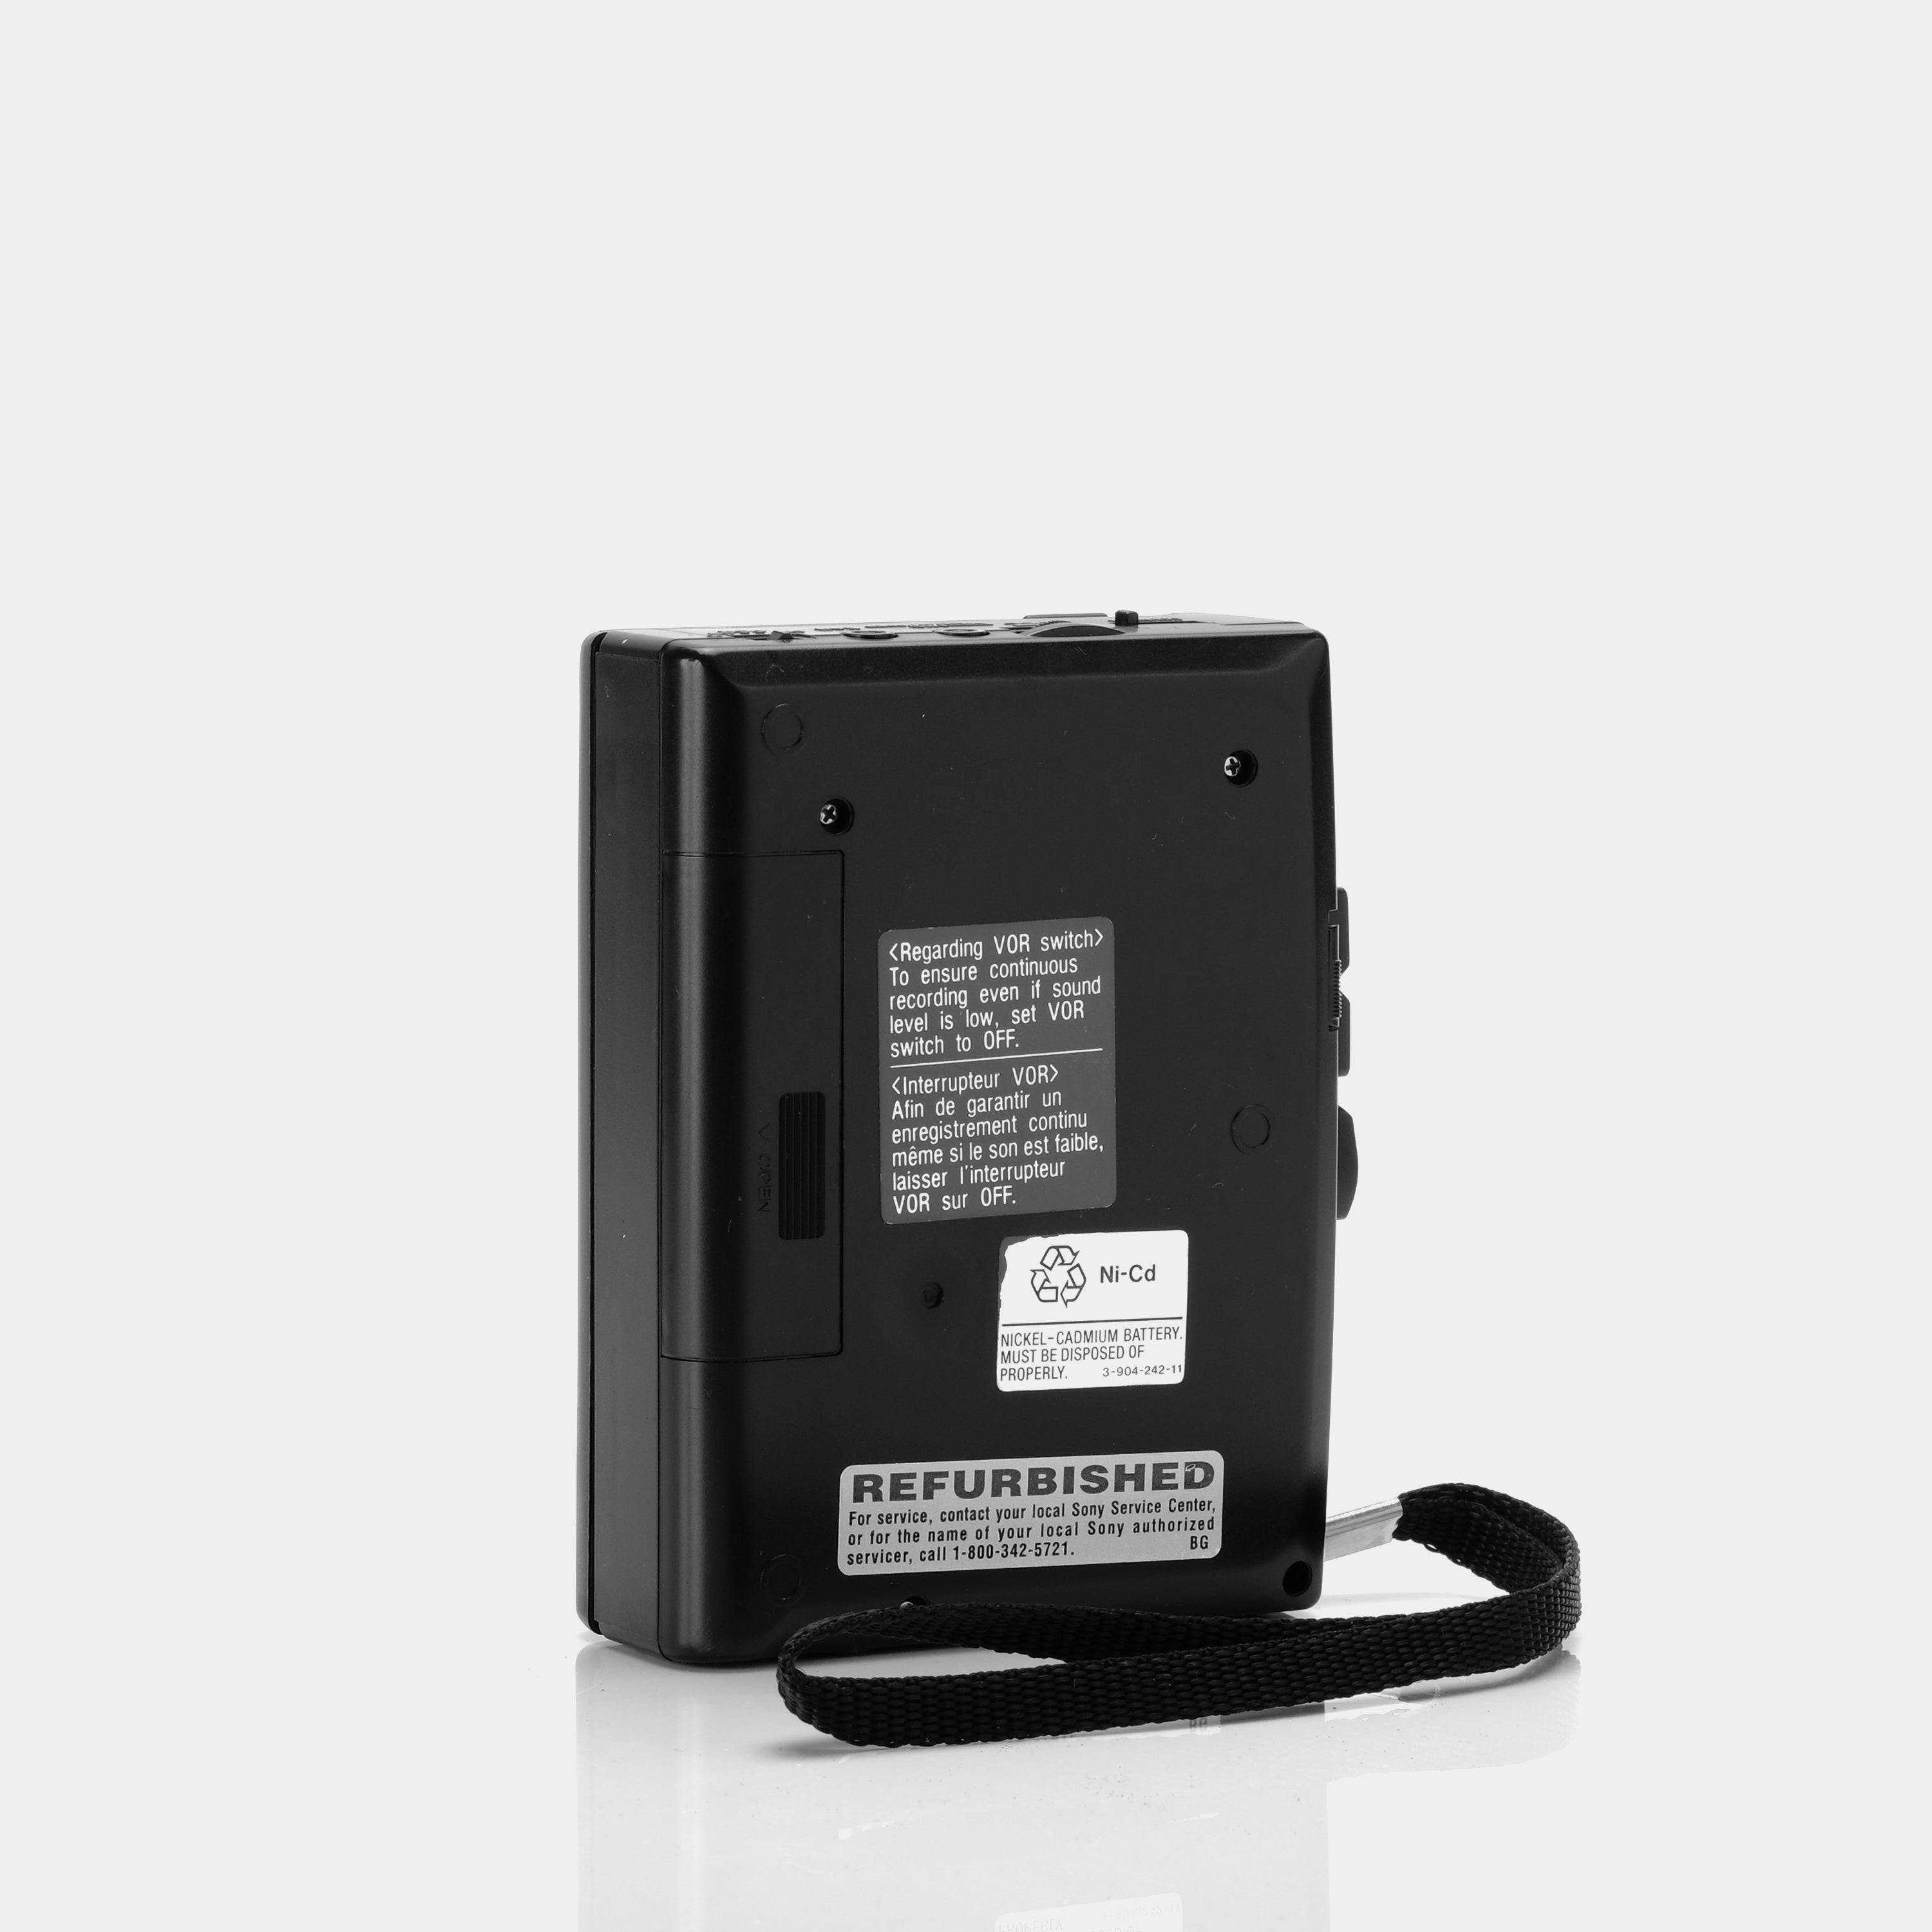 Sony Cassette Corder TCM-866V Portable Cassette Player